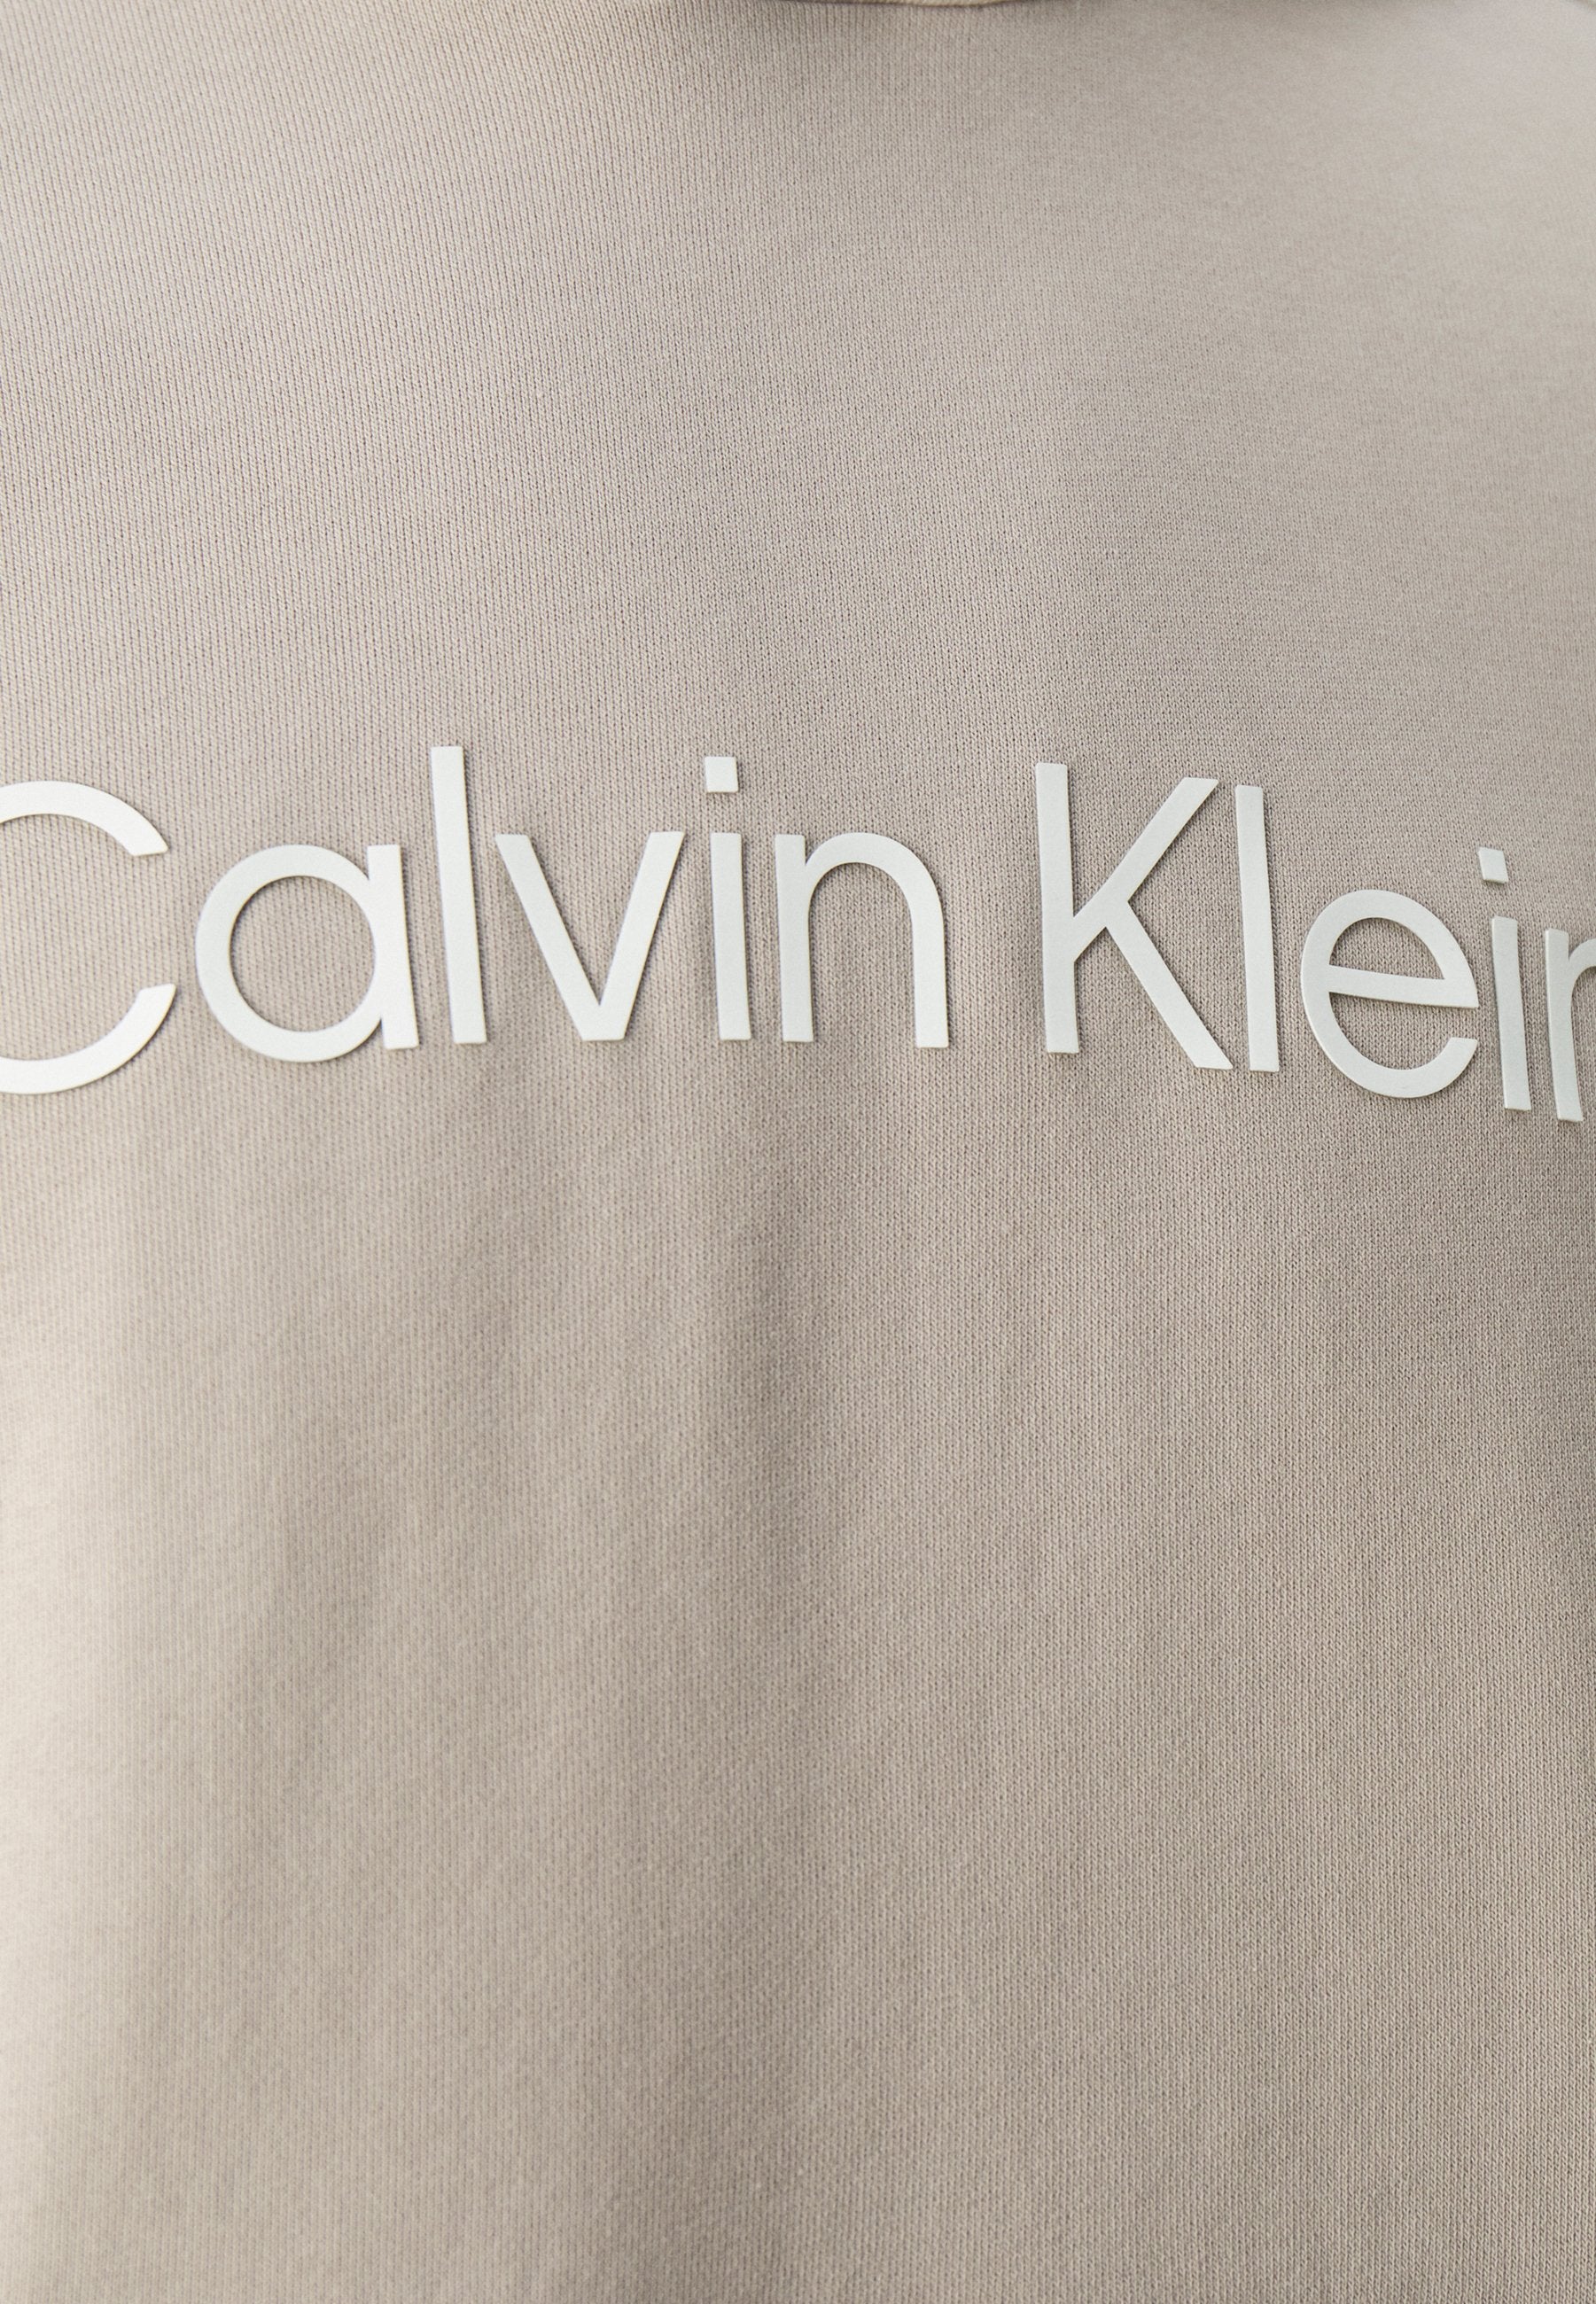 Calvin Klein K111345 Msw Hero Logo Comfort Hoodie Light Grey